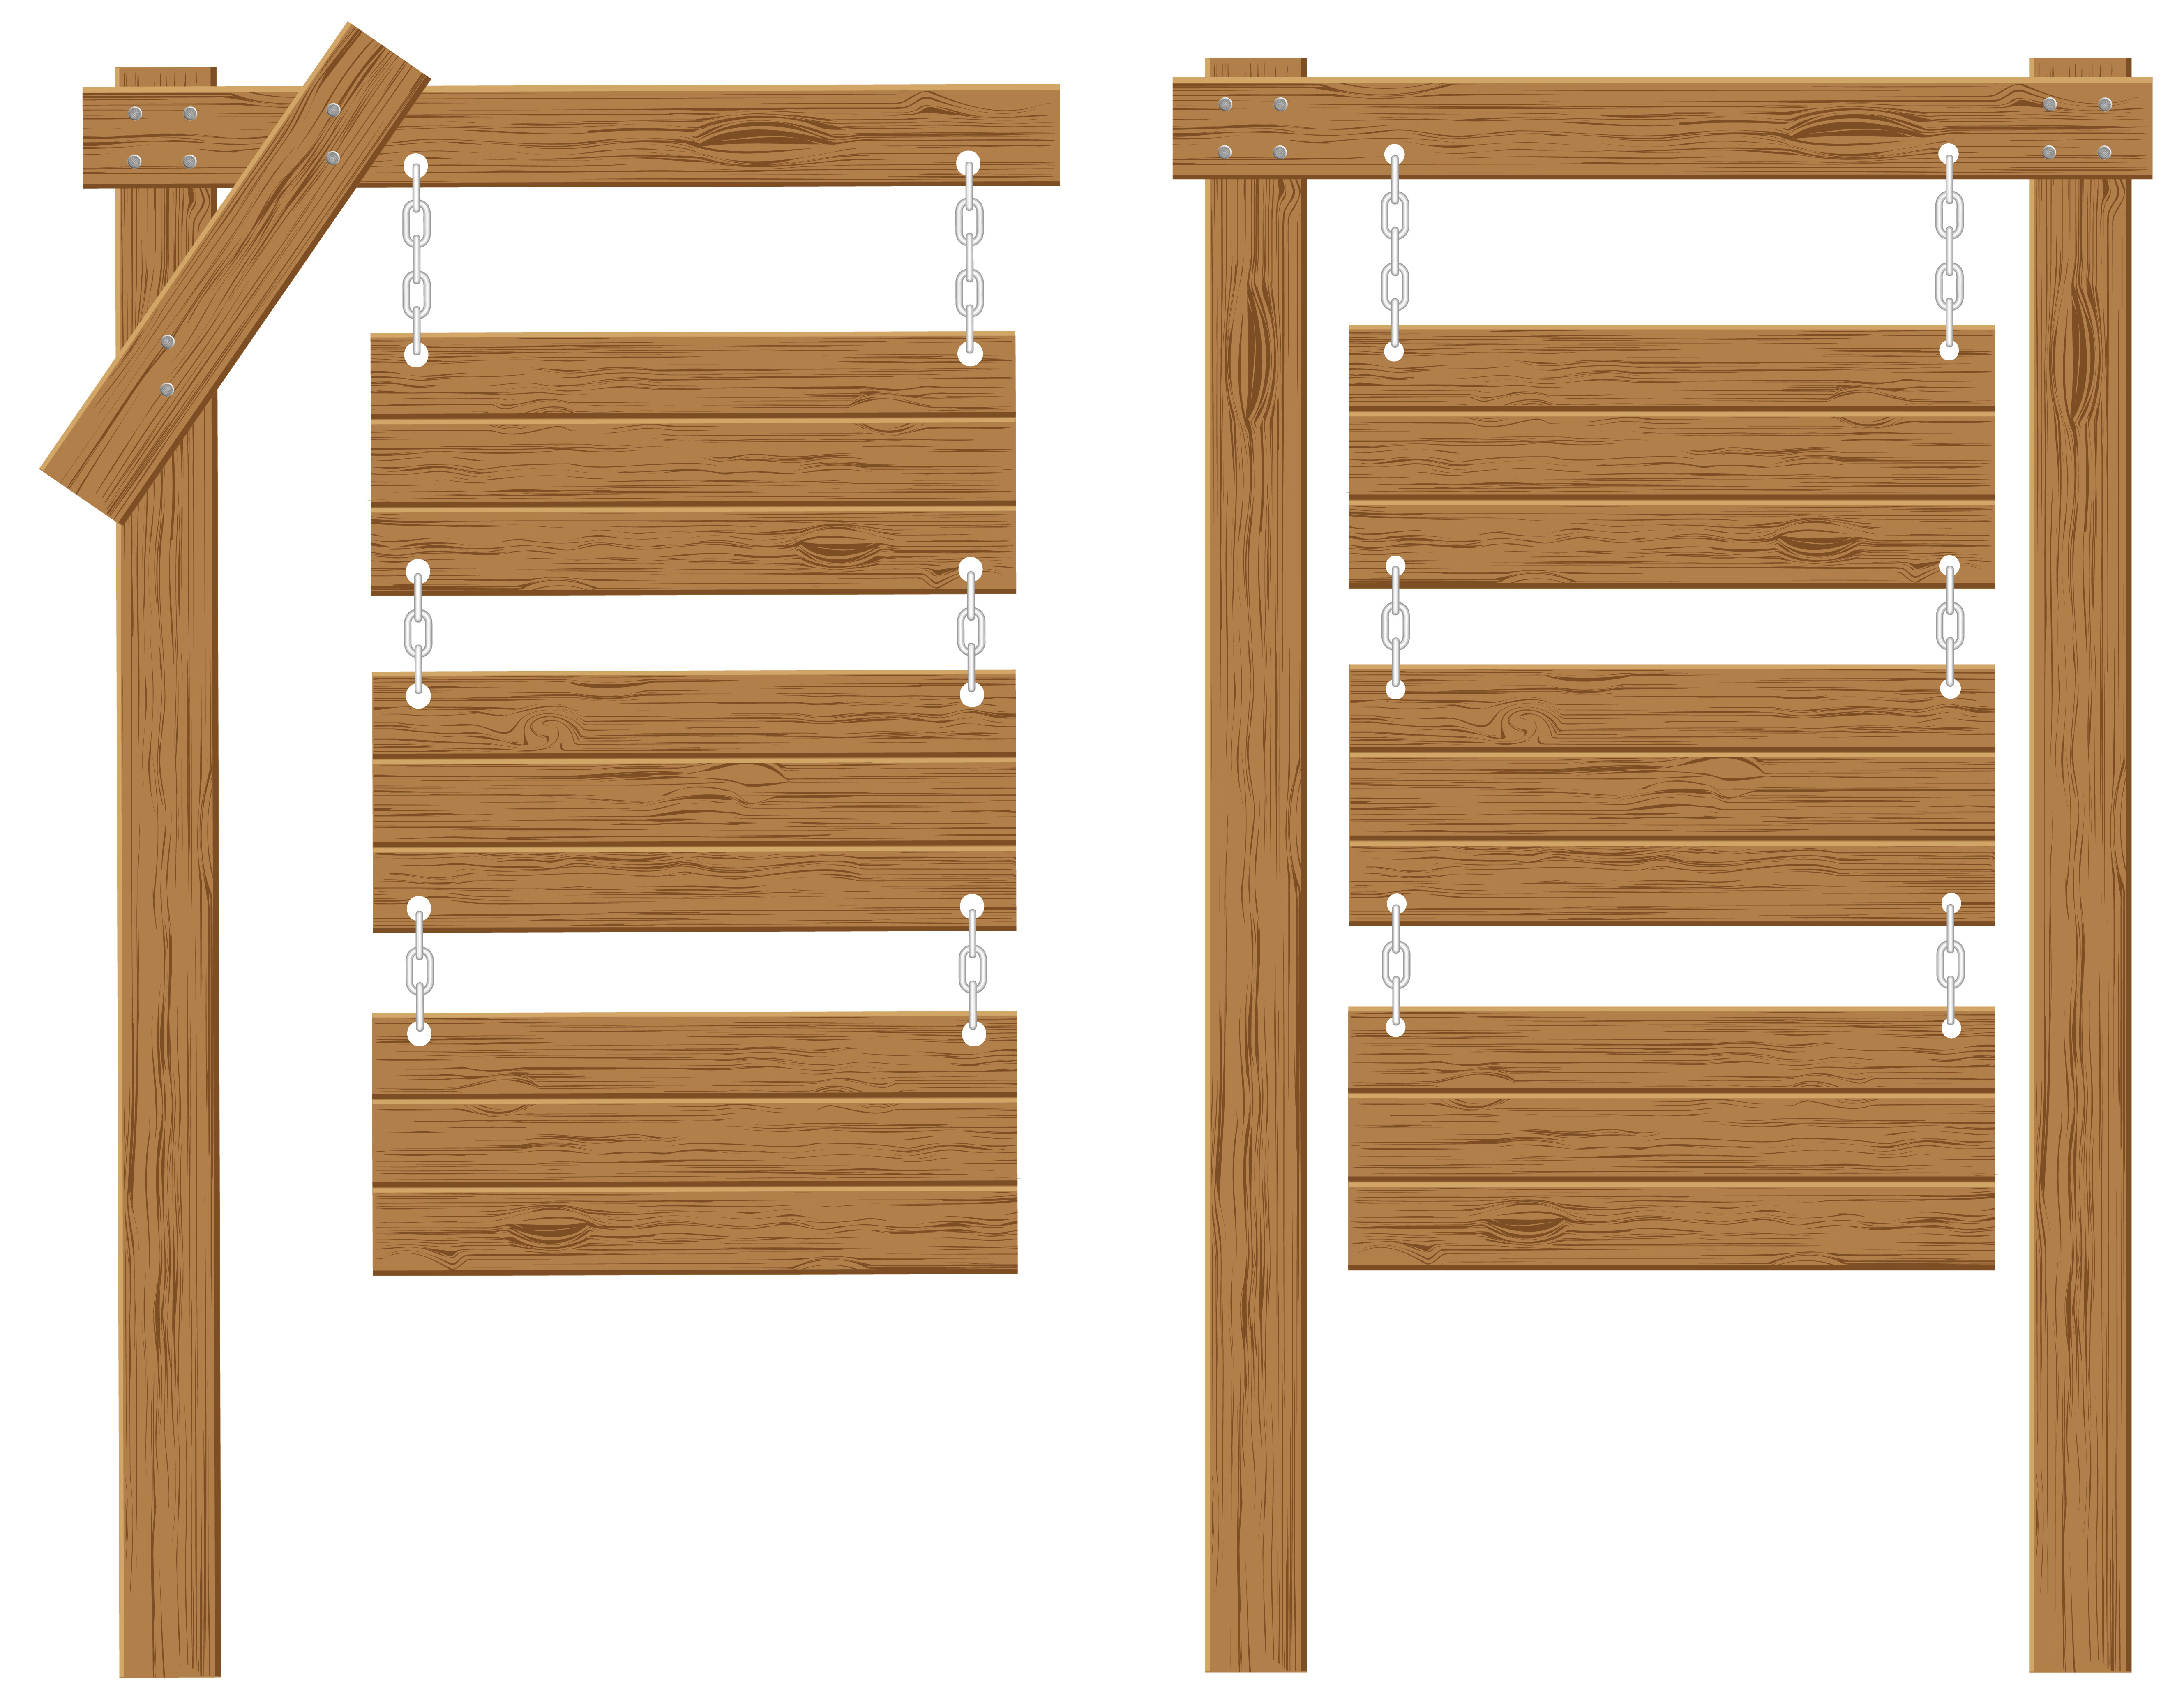 Uitgaven rijk Knooppunt houten planken tekenen vector illustratie 492514 - Download Free Vectors,  Vector Bestanden, Ontwerpen Templates